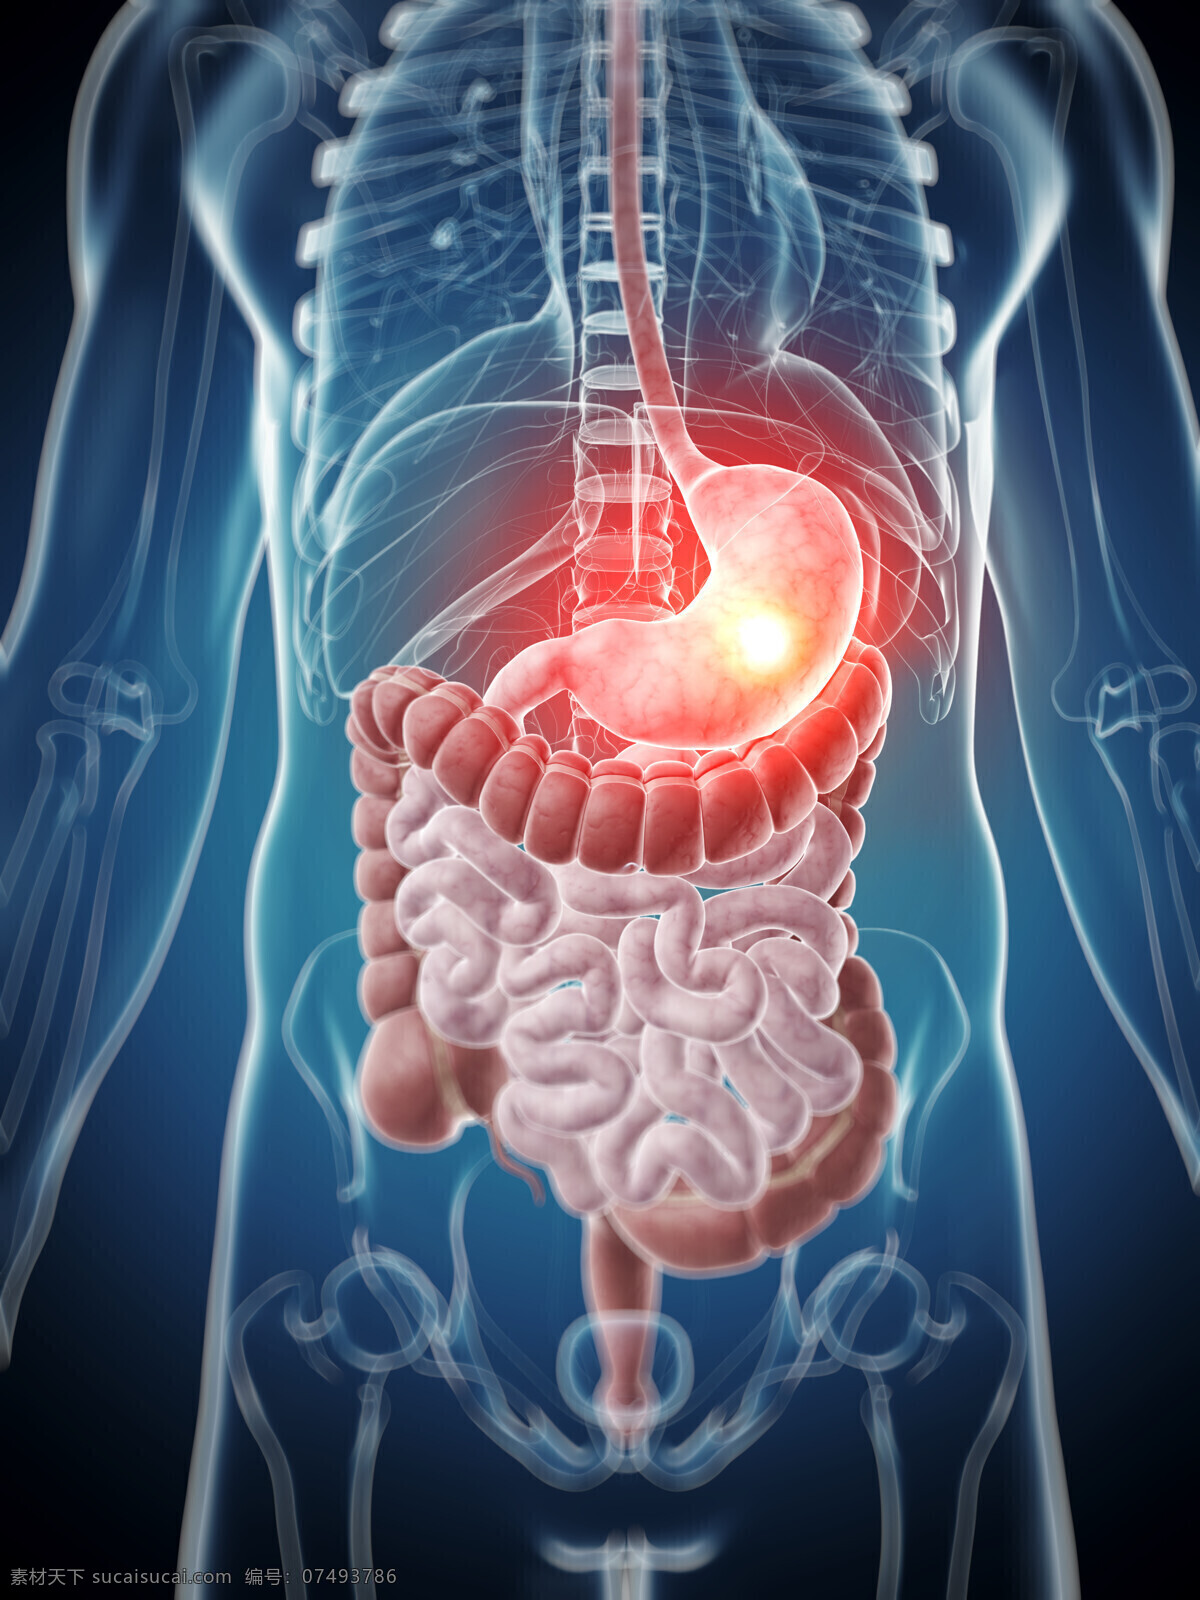 消化系统 人体器官 胃部 大肠 人体 人体组织 人体结构 医学 医疗 科学 医疗护理 现代科技